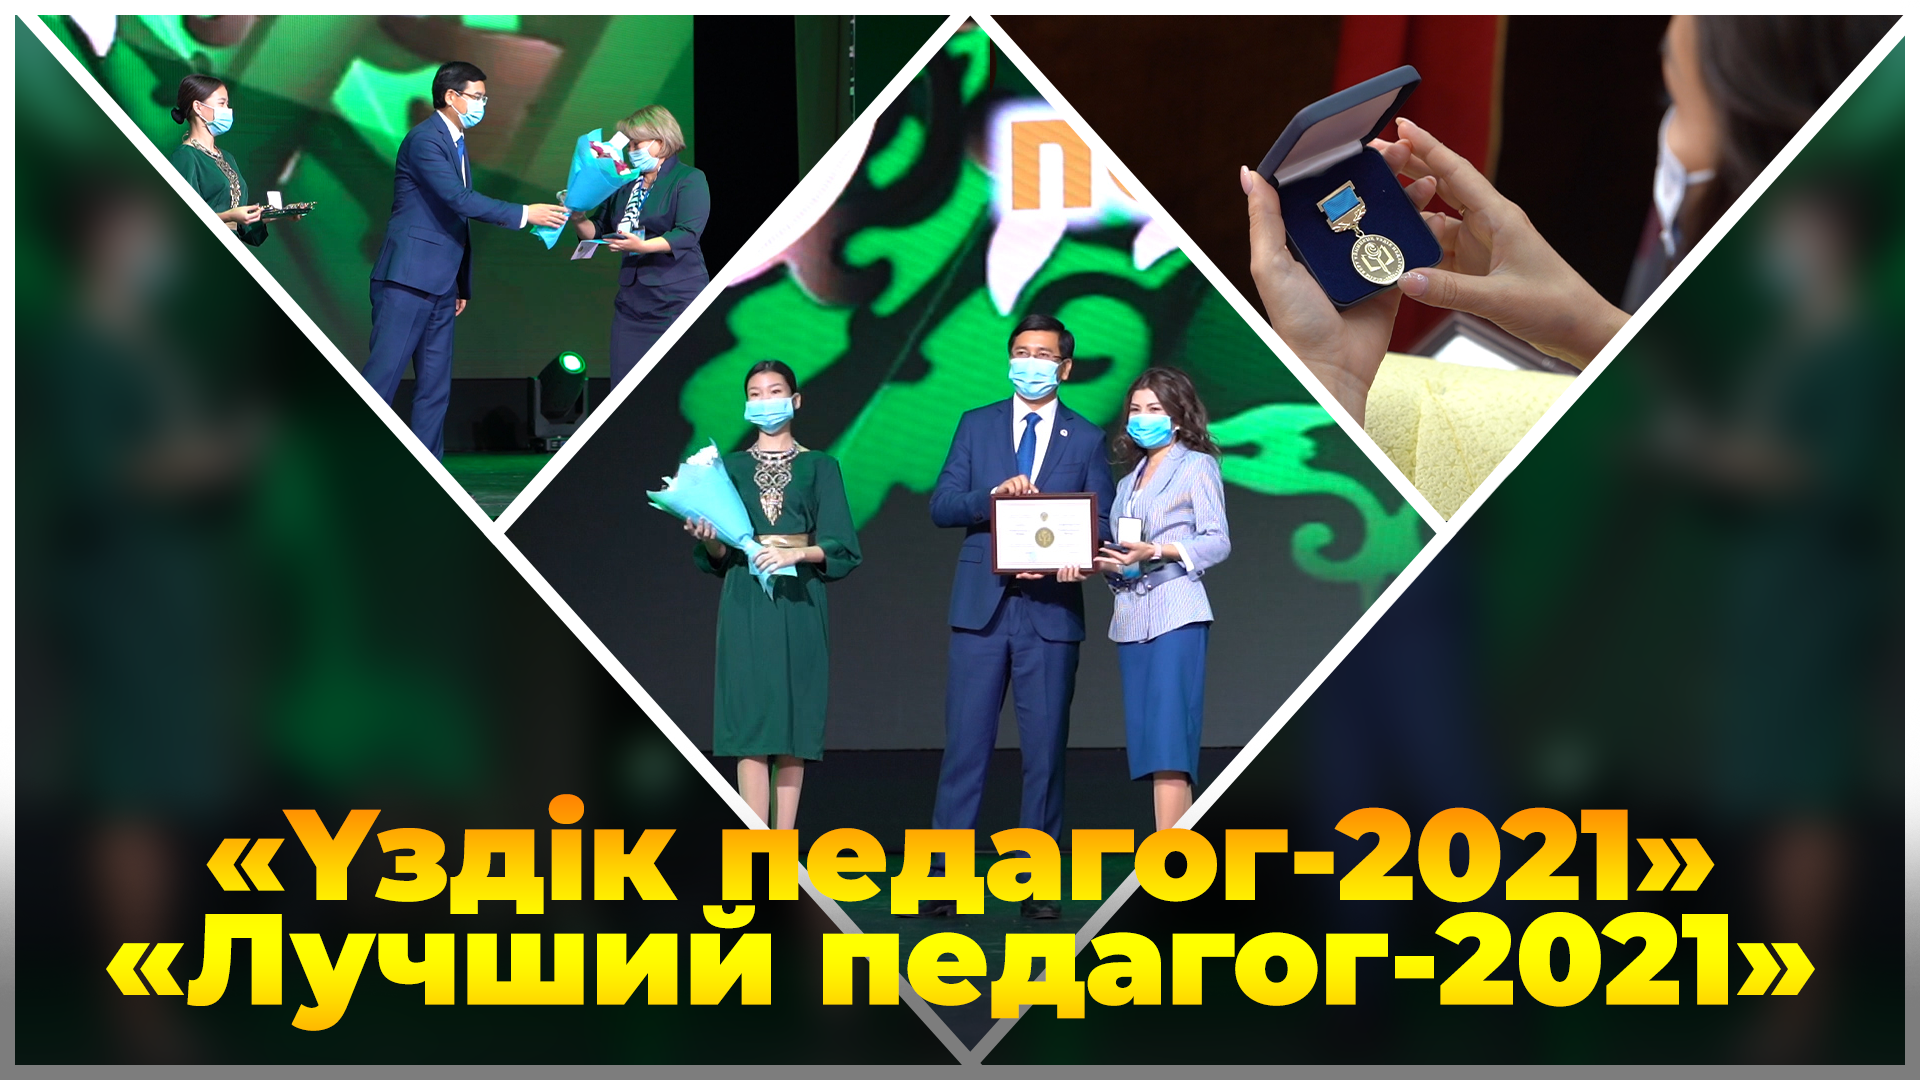 Министр образования и науки РК Асхат Аймагамбетов поздравил победителей республиканского конкурса «Лучший педагог-2021»